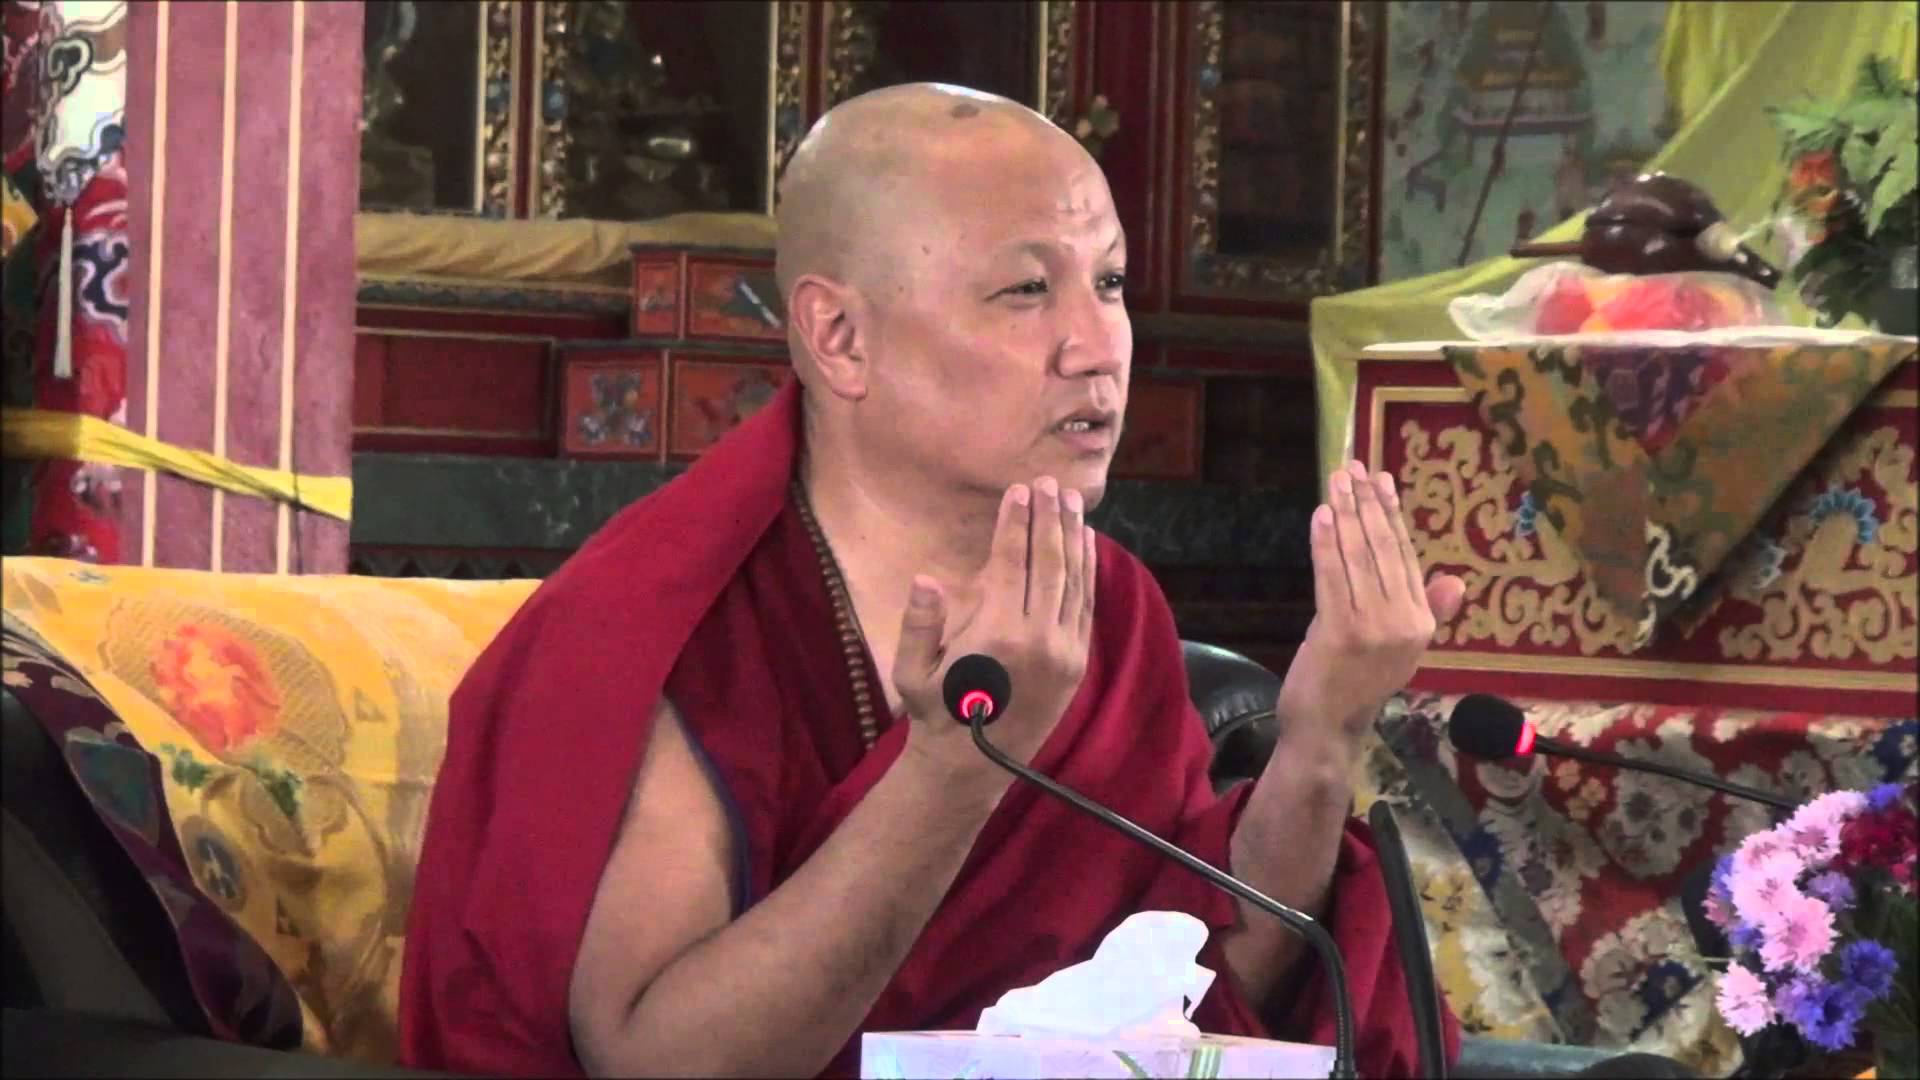 Ven. Sangye Nyenpa Rinpoce: Siete voi a leggere la vostra mente, solo voi sapete se le vostre attitudini sono corrette, spiate quindi cosa fa la vostre mente